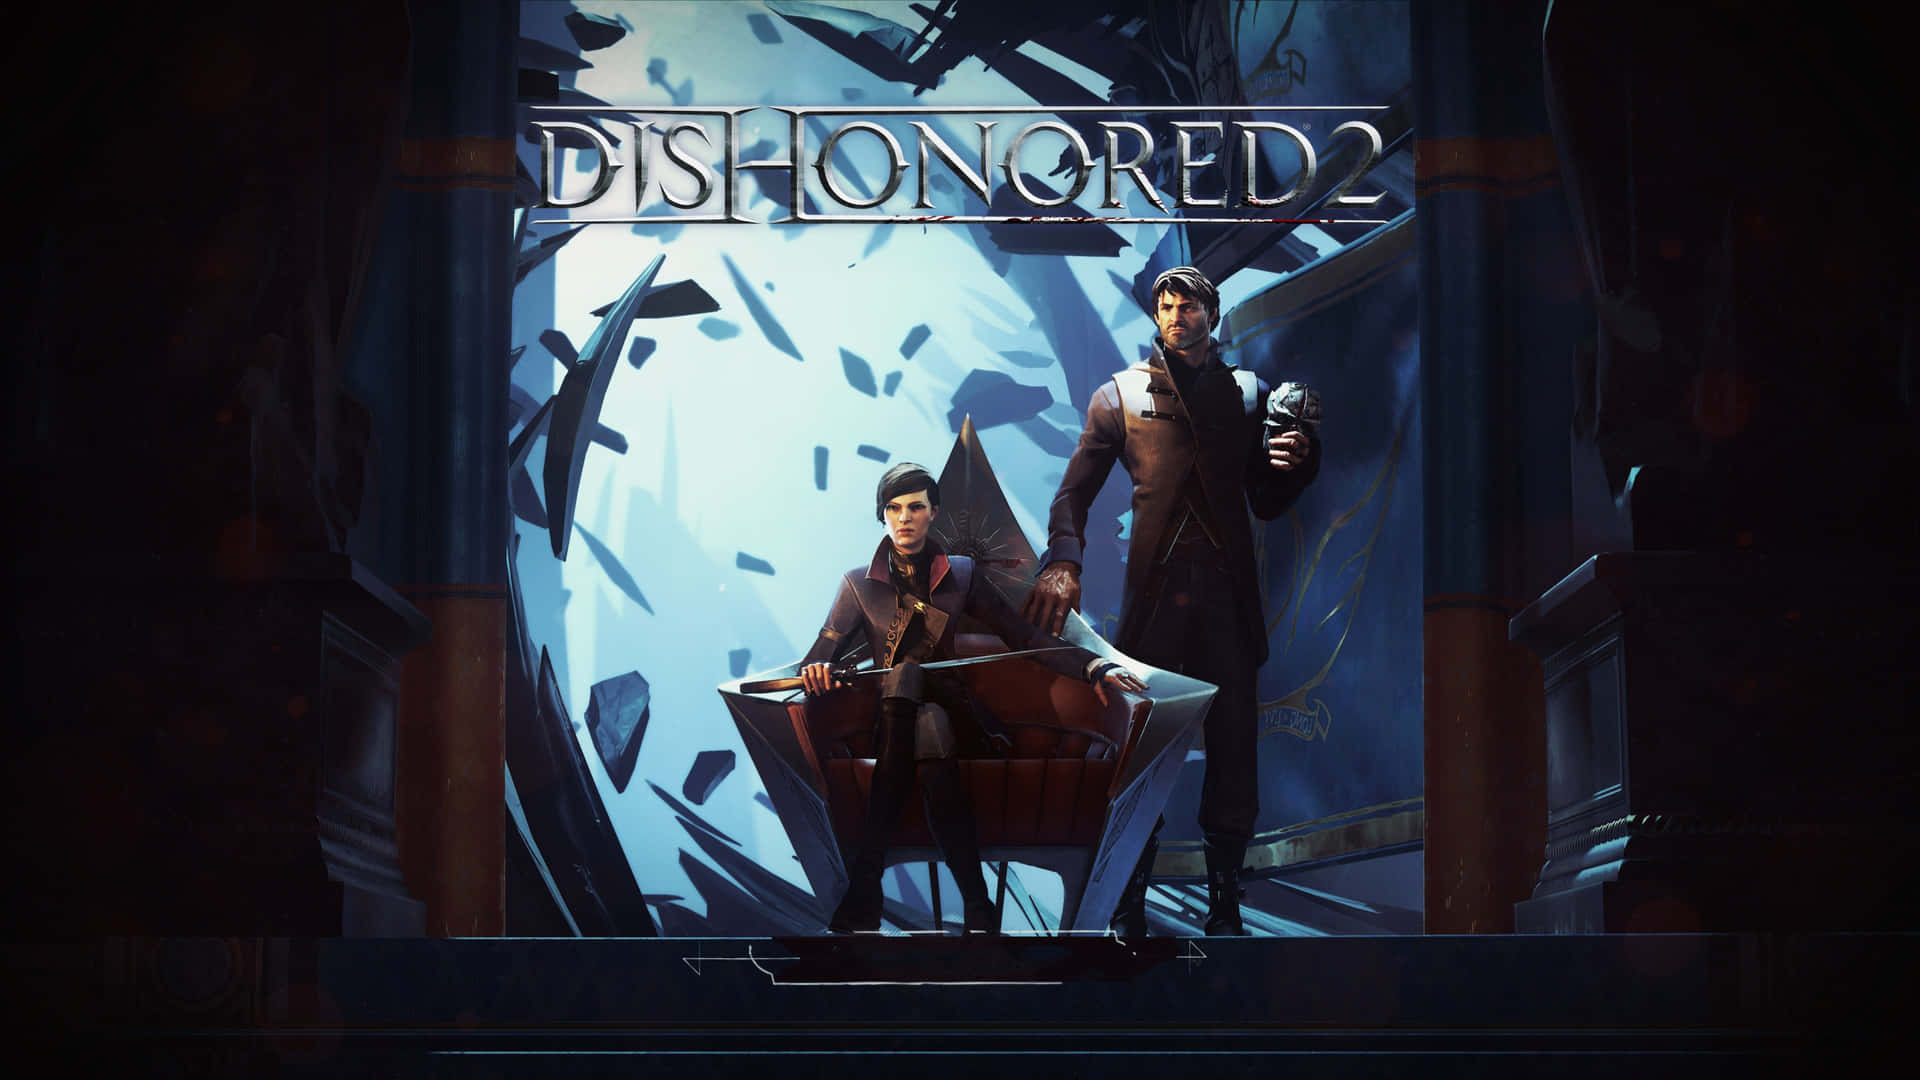 Dishonored2 - Dator - Dator - Dator - Dator - Dator Wallpaper